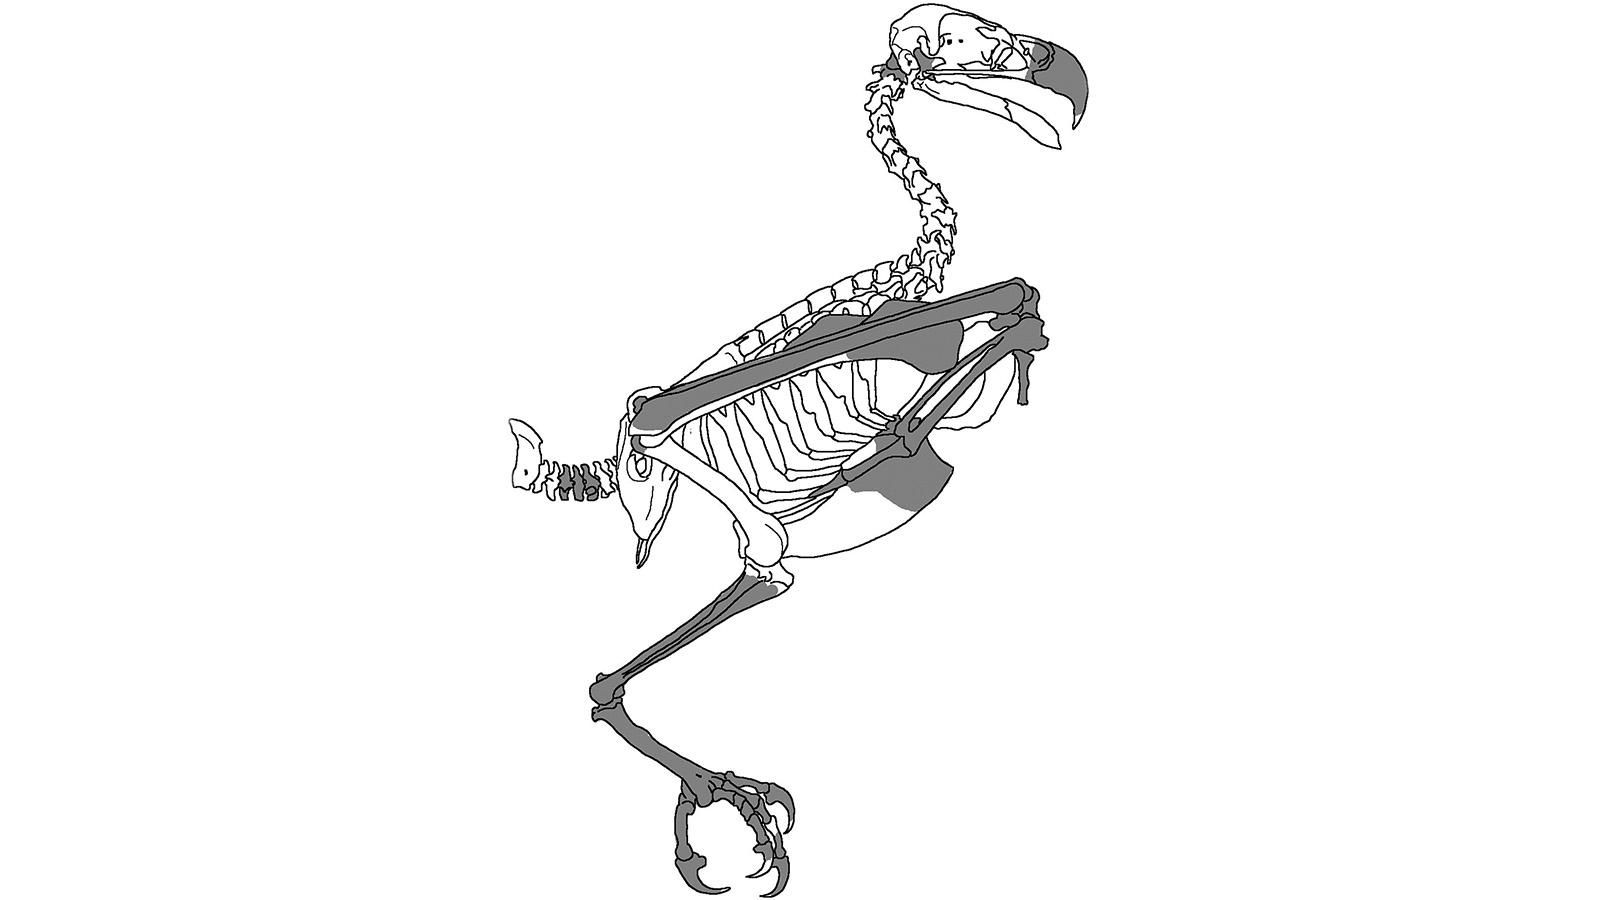 Вчені відшукали найстарішого орла у світі - Новини технологій - Техно